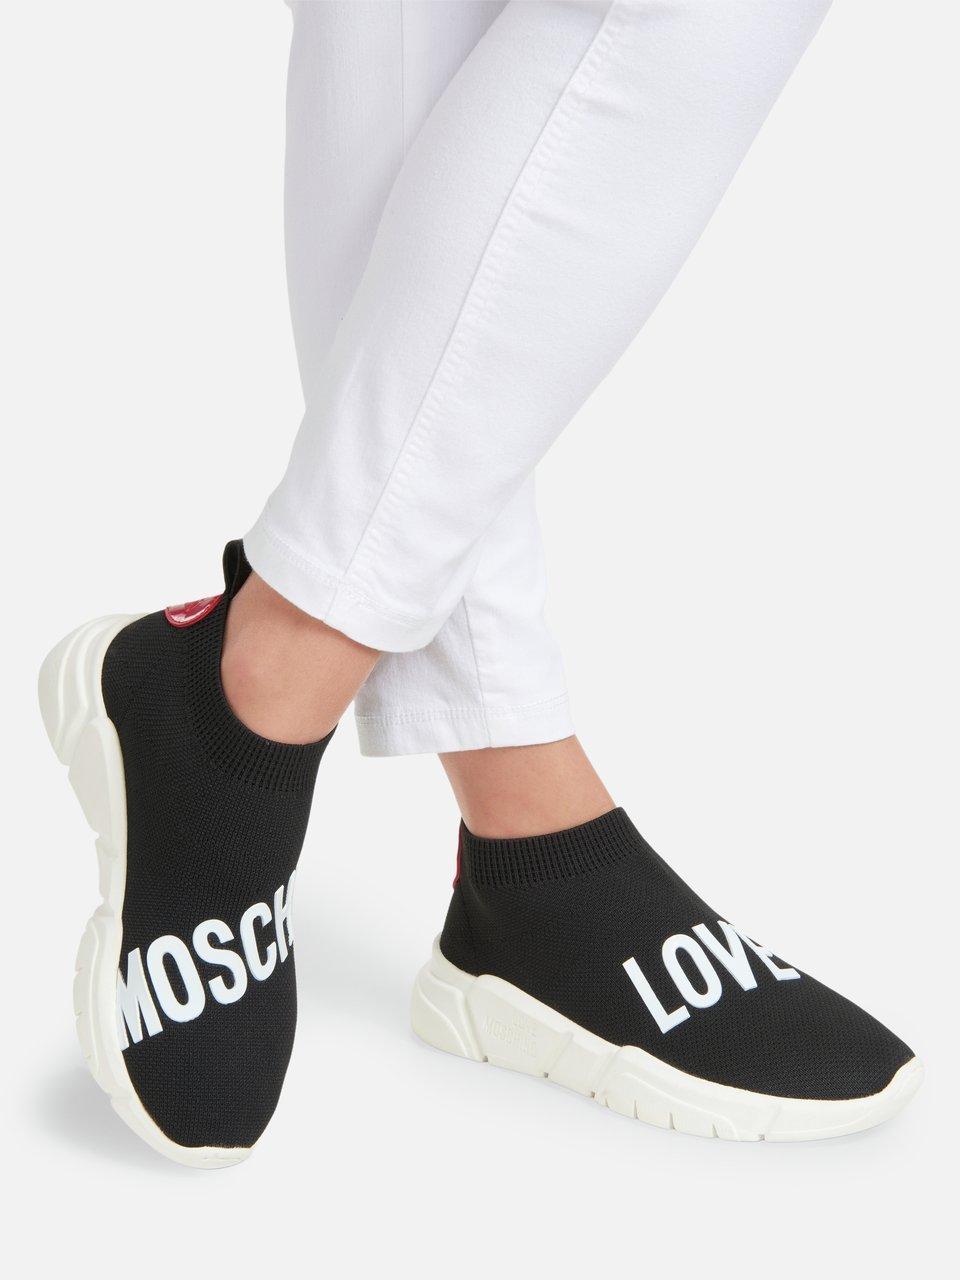 Meenemen Verrijking eindpunt Love Moschino - Sneakers - zwart/wit